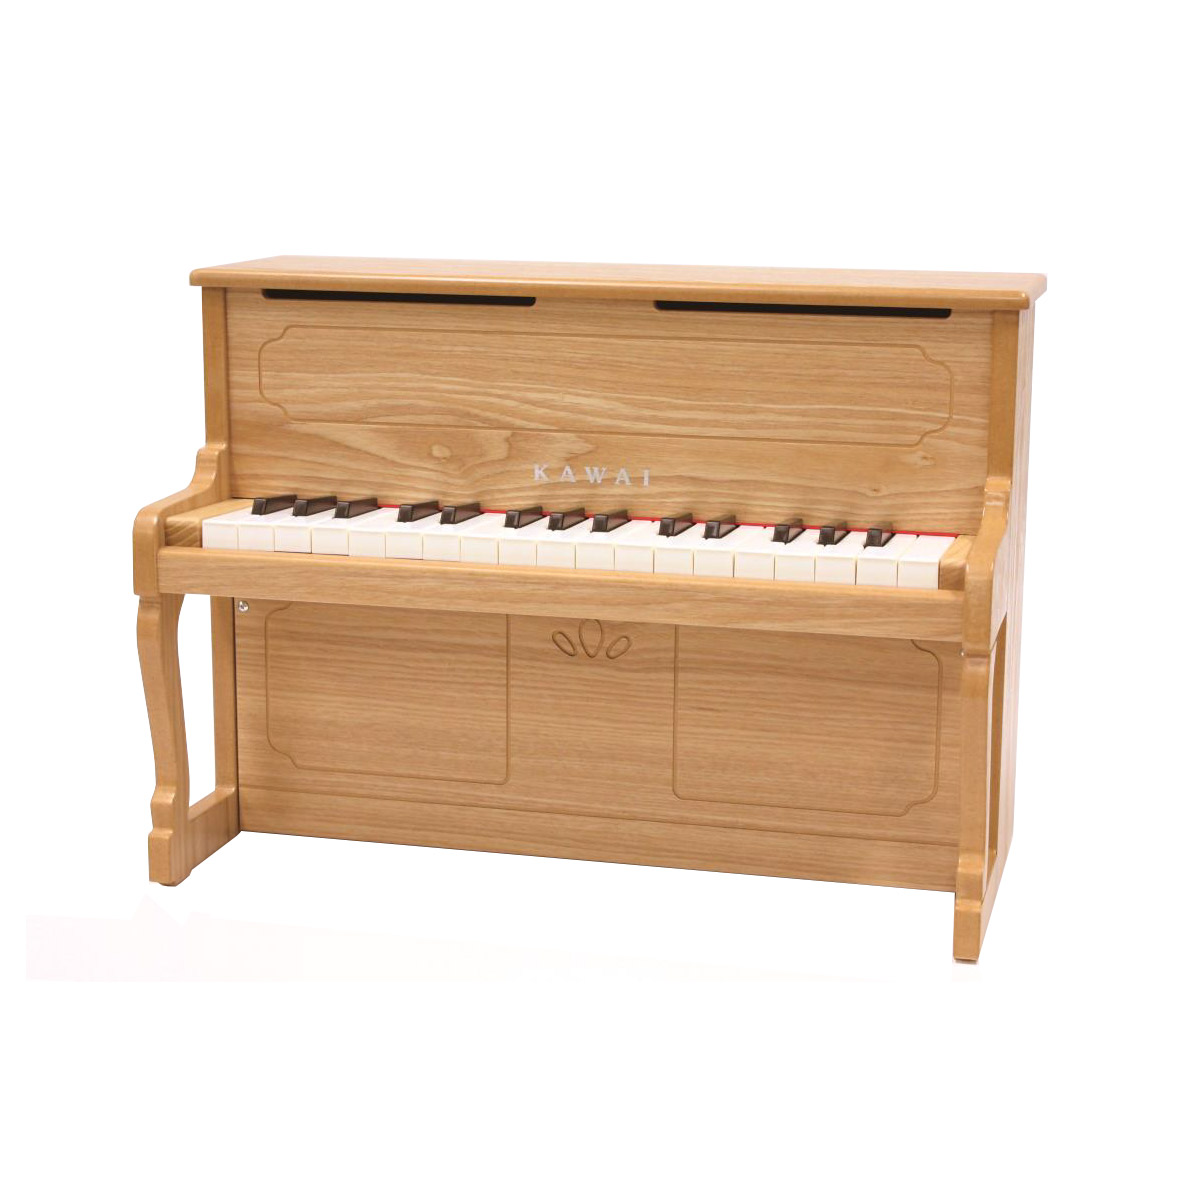 KAWAI 1154 ナチュラル ミニピアノアップライトピアノ おもちゃ 【カワイ ミニピアノ】 | 島村楽器オンラインストア